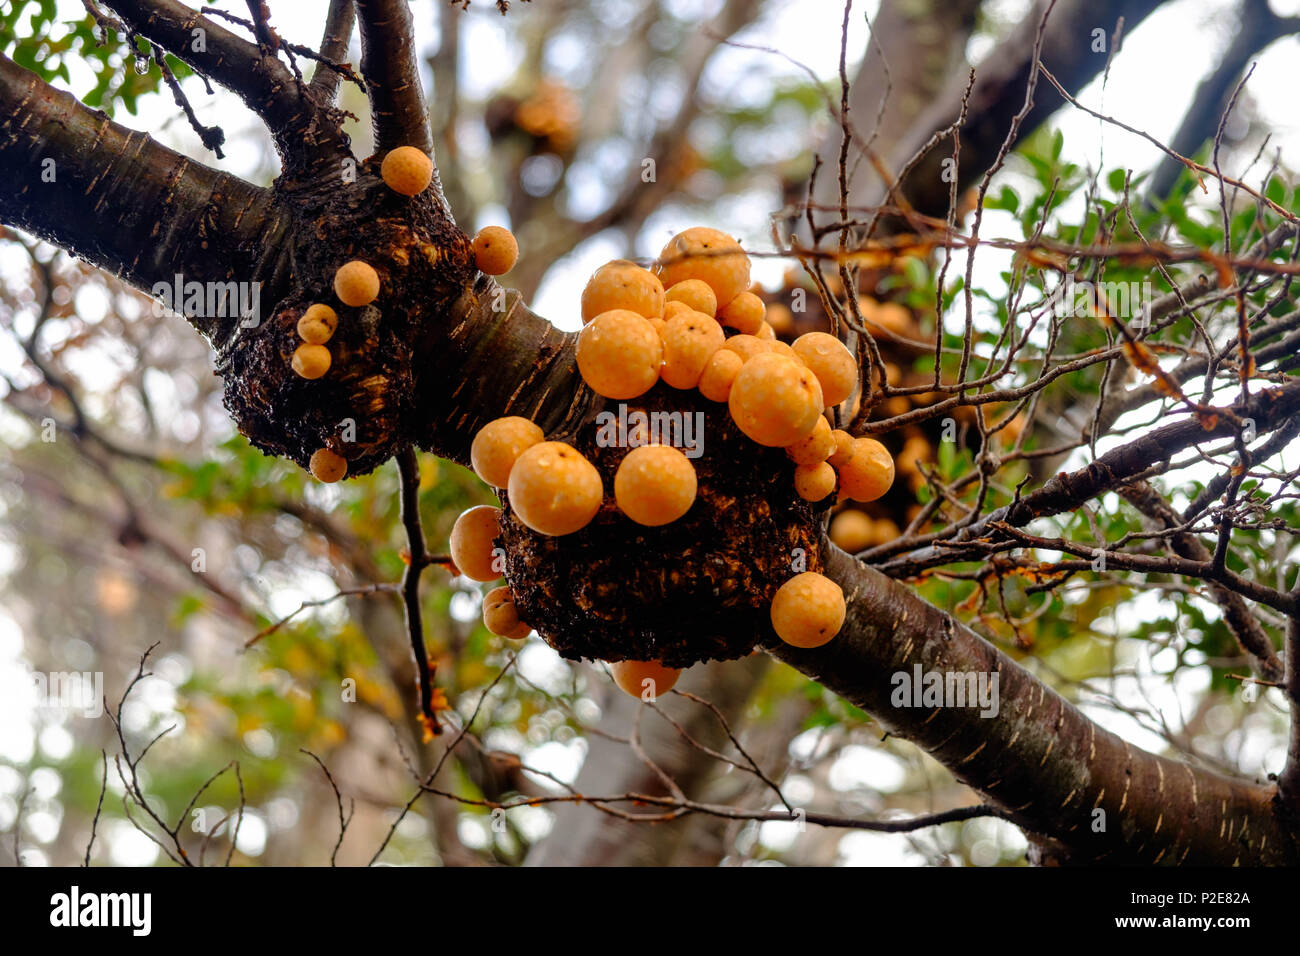 'Pan de indio' ist ein essbarer Pilz. Dieser Orangenpilz wächst oft auf langen Bäumen, wie hier im Tierra del Fuego Nationalpark in Argentinien. Stockfoto